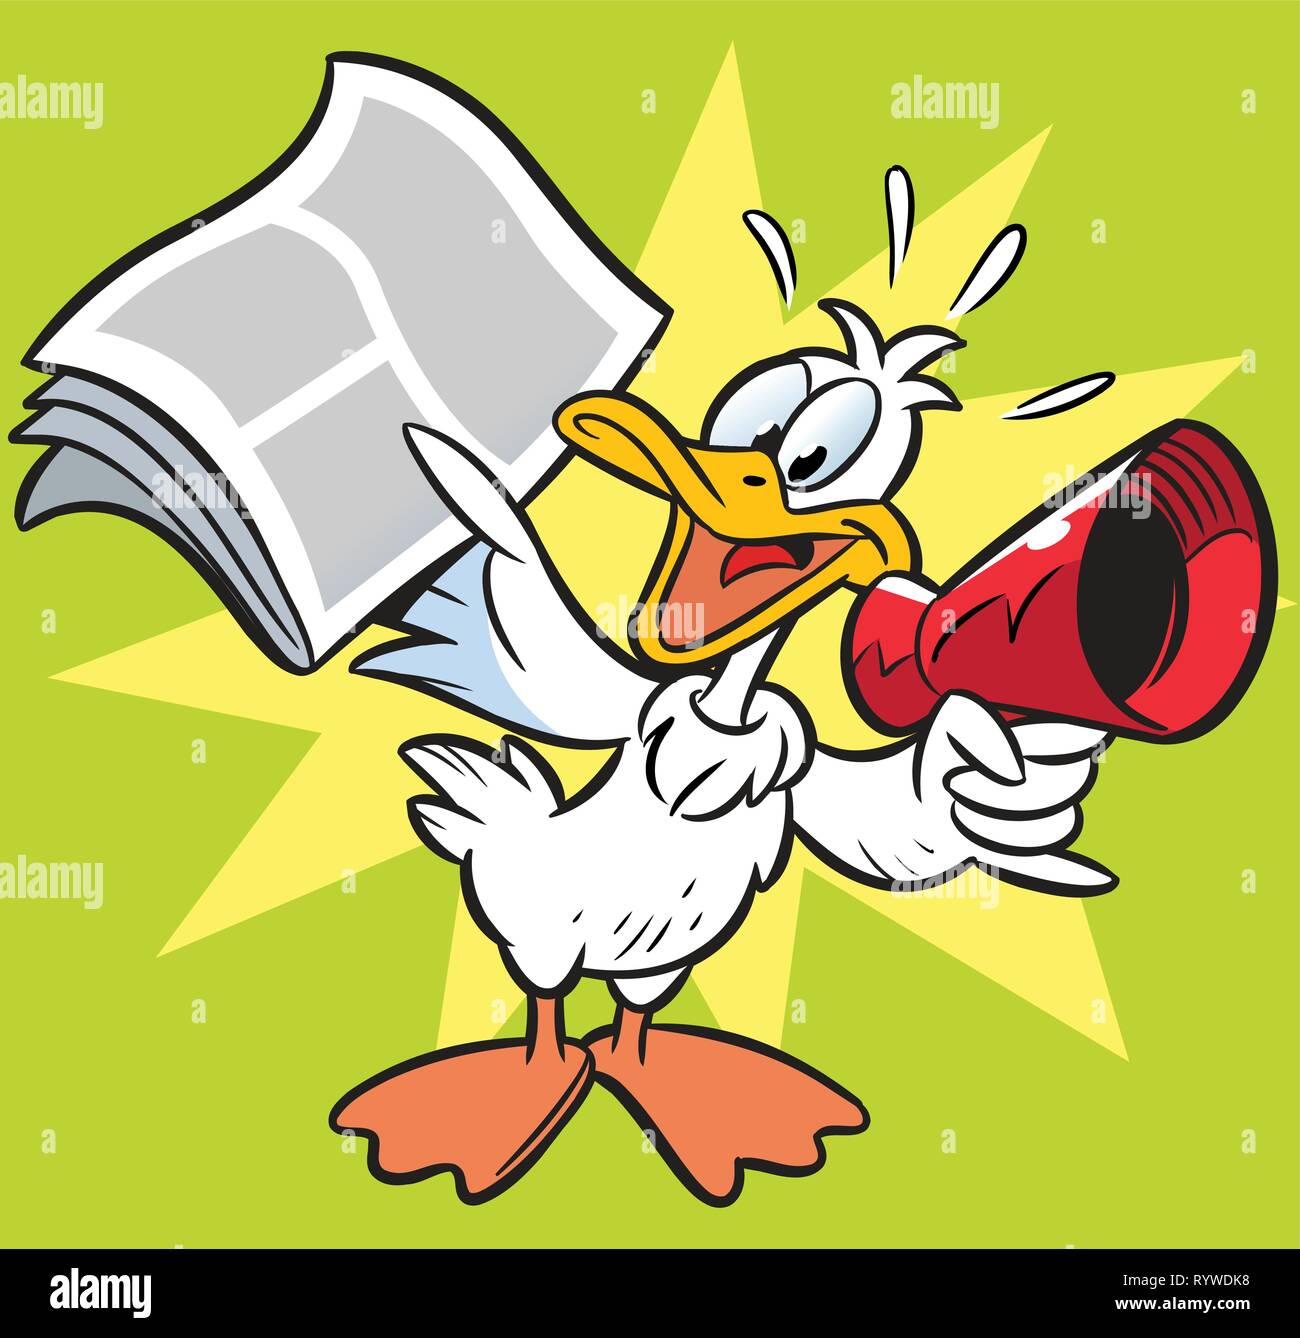 L'illustration montre l'oie, qui crie l'actualité dans le journal mégaphone. Illustration de Vecteur